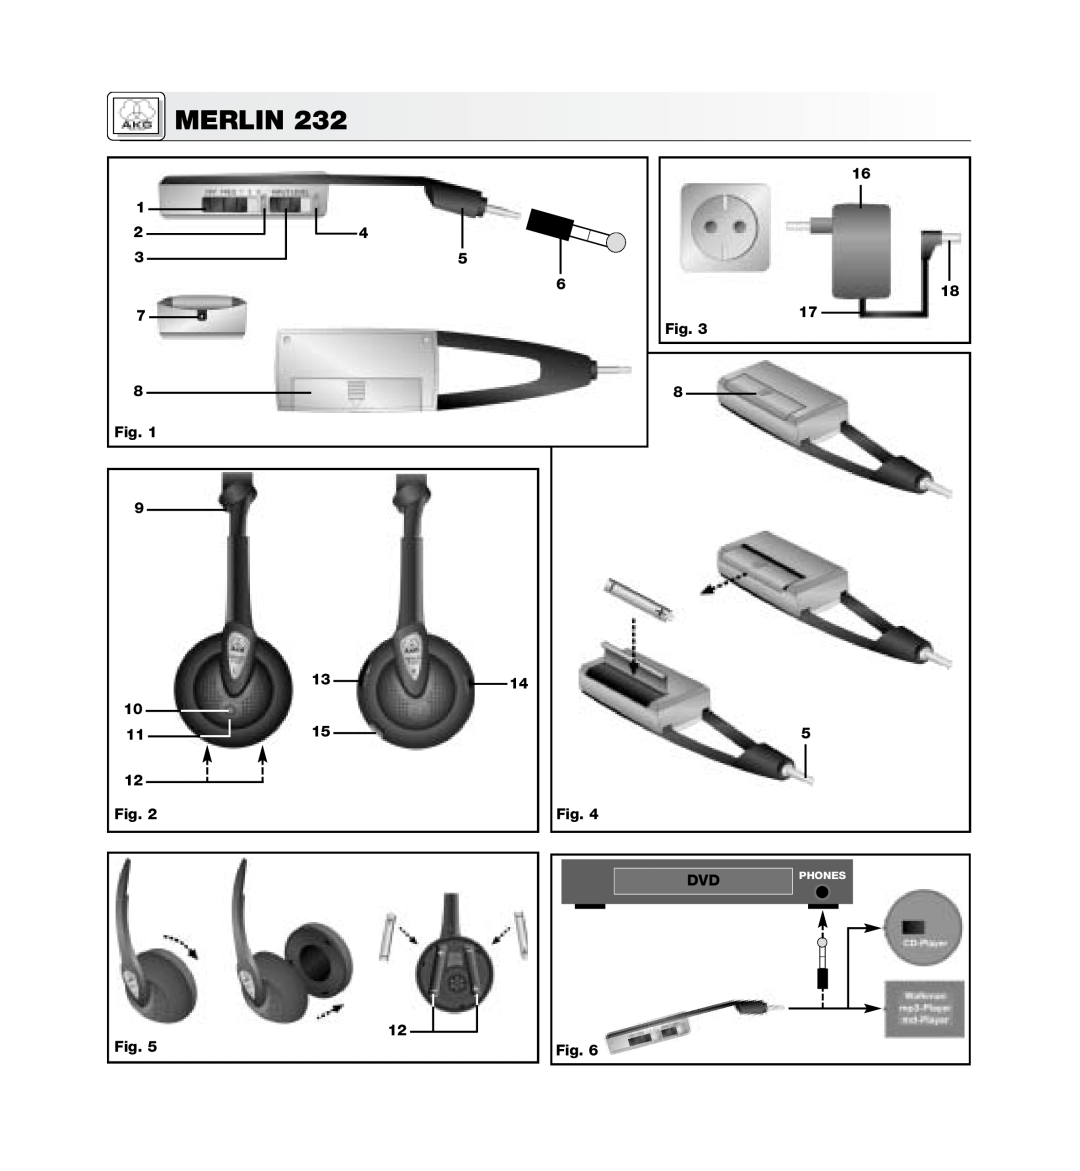 AKG Acoustics MERLIN 232 manual 6 7 8 Fig, 16 18 17 Fig, 12 Fig, Merlin, Phones 